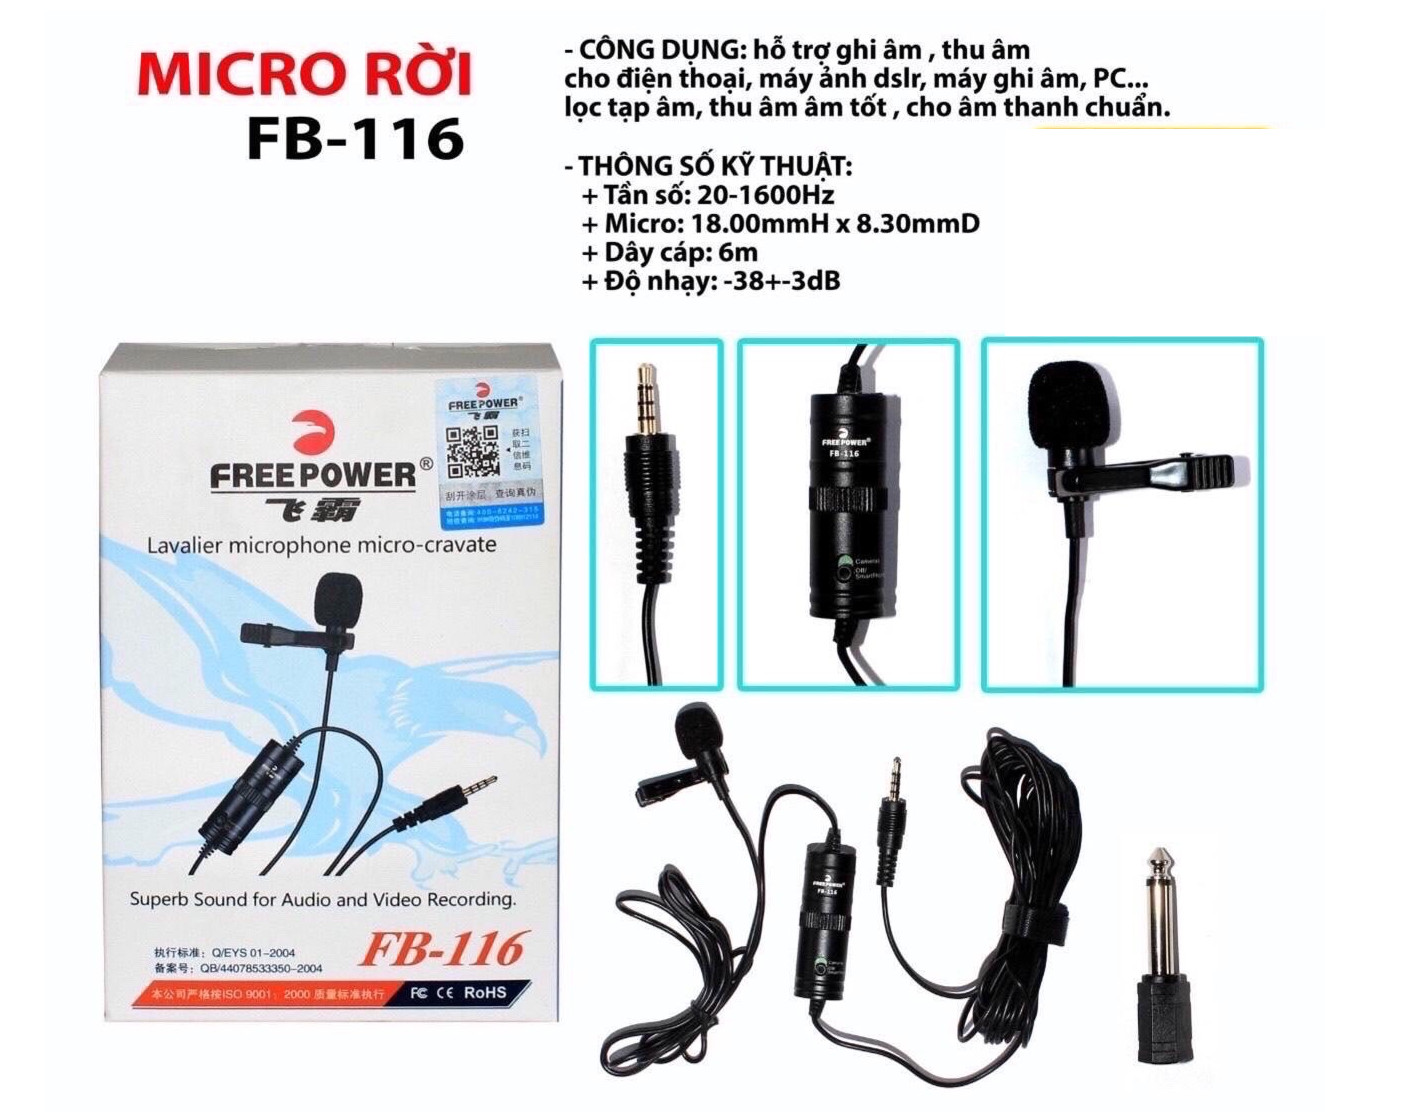 Micro rời cài áo hỗ trợ ghi âm, thu âm cho điện thoại, máy tính bảng, máy ảnh, pc, laptop FreeFower FB-116